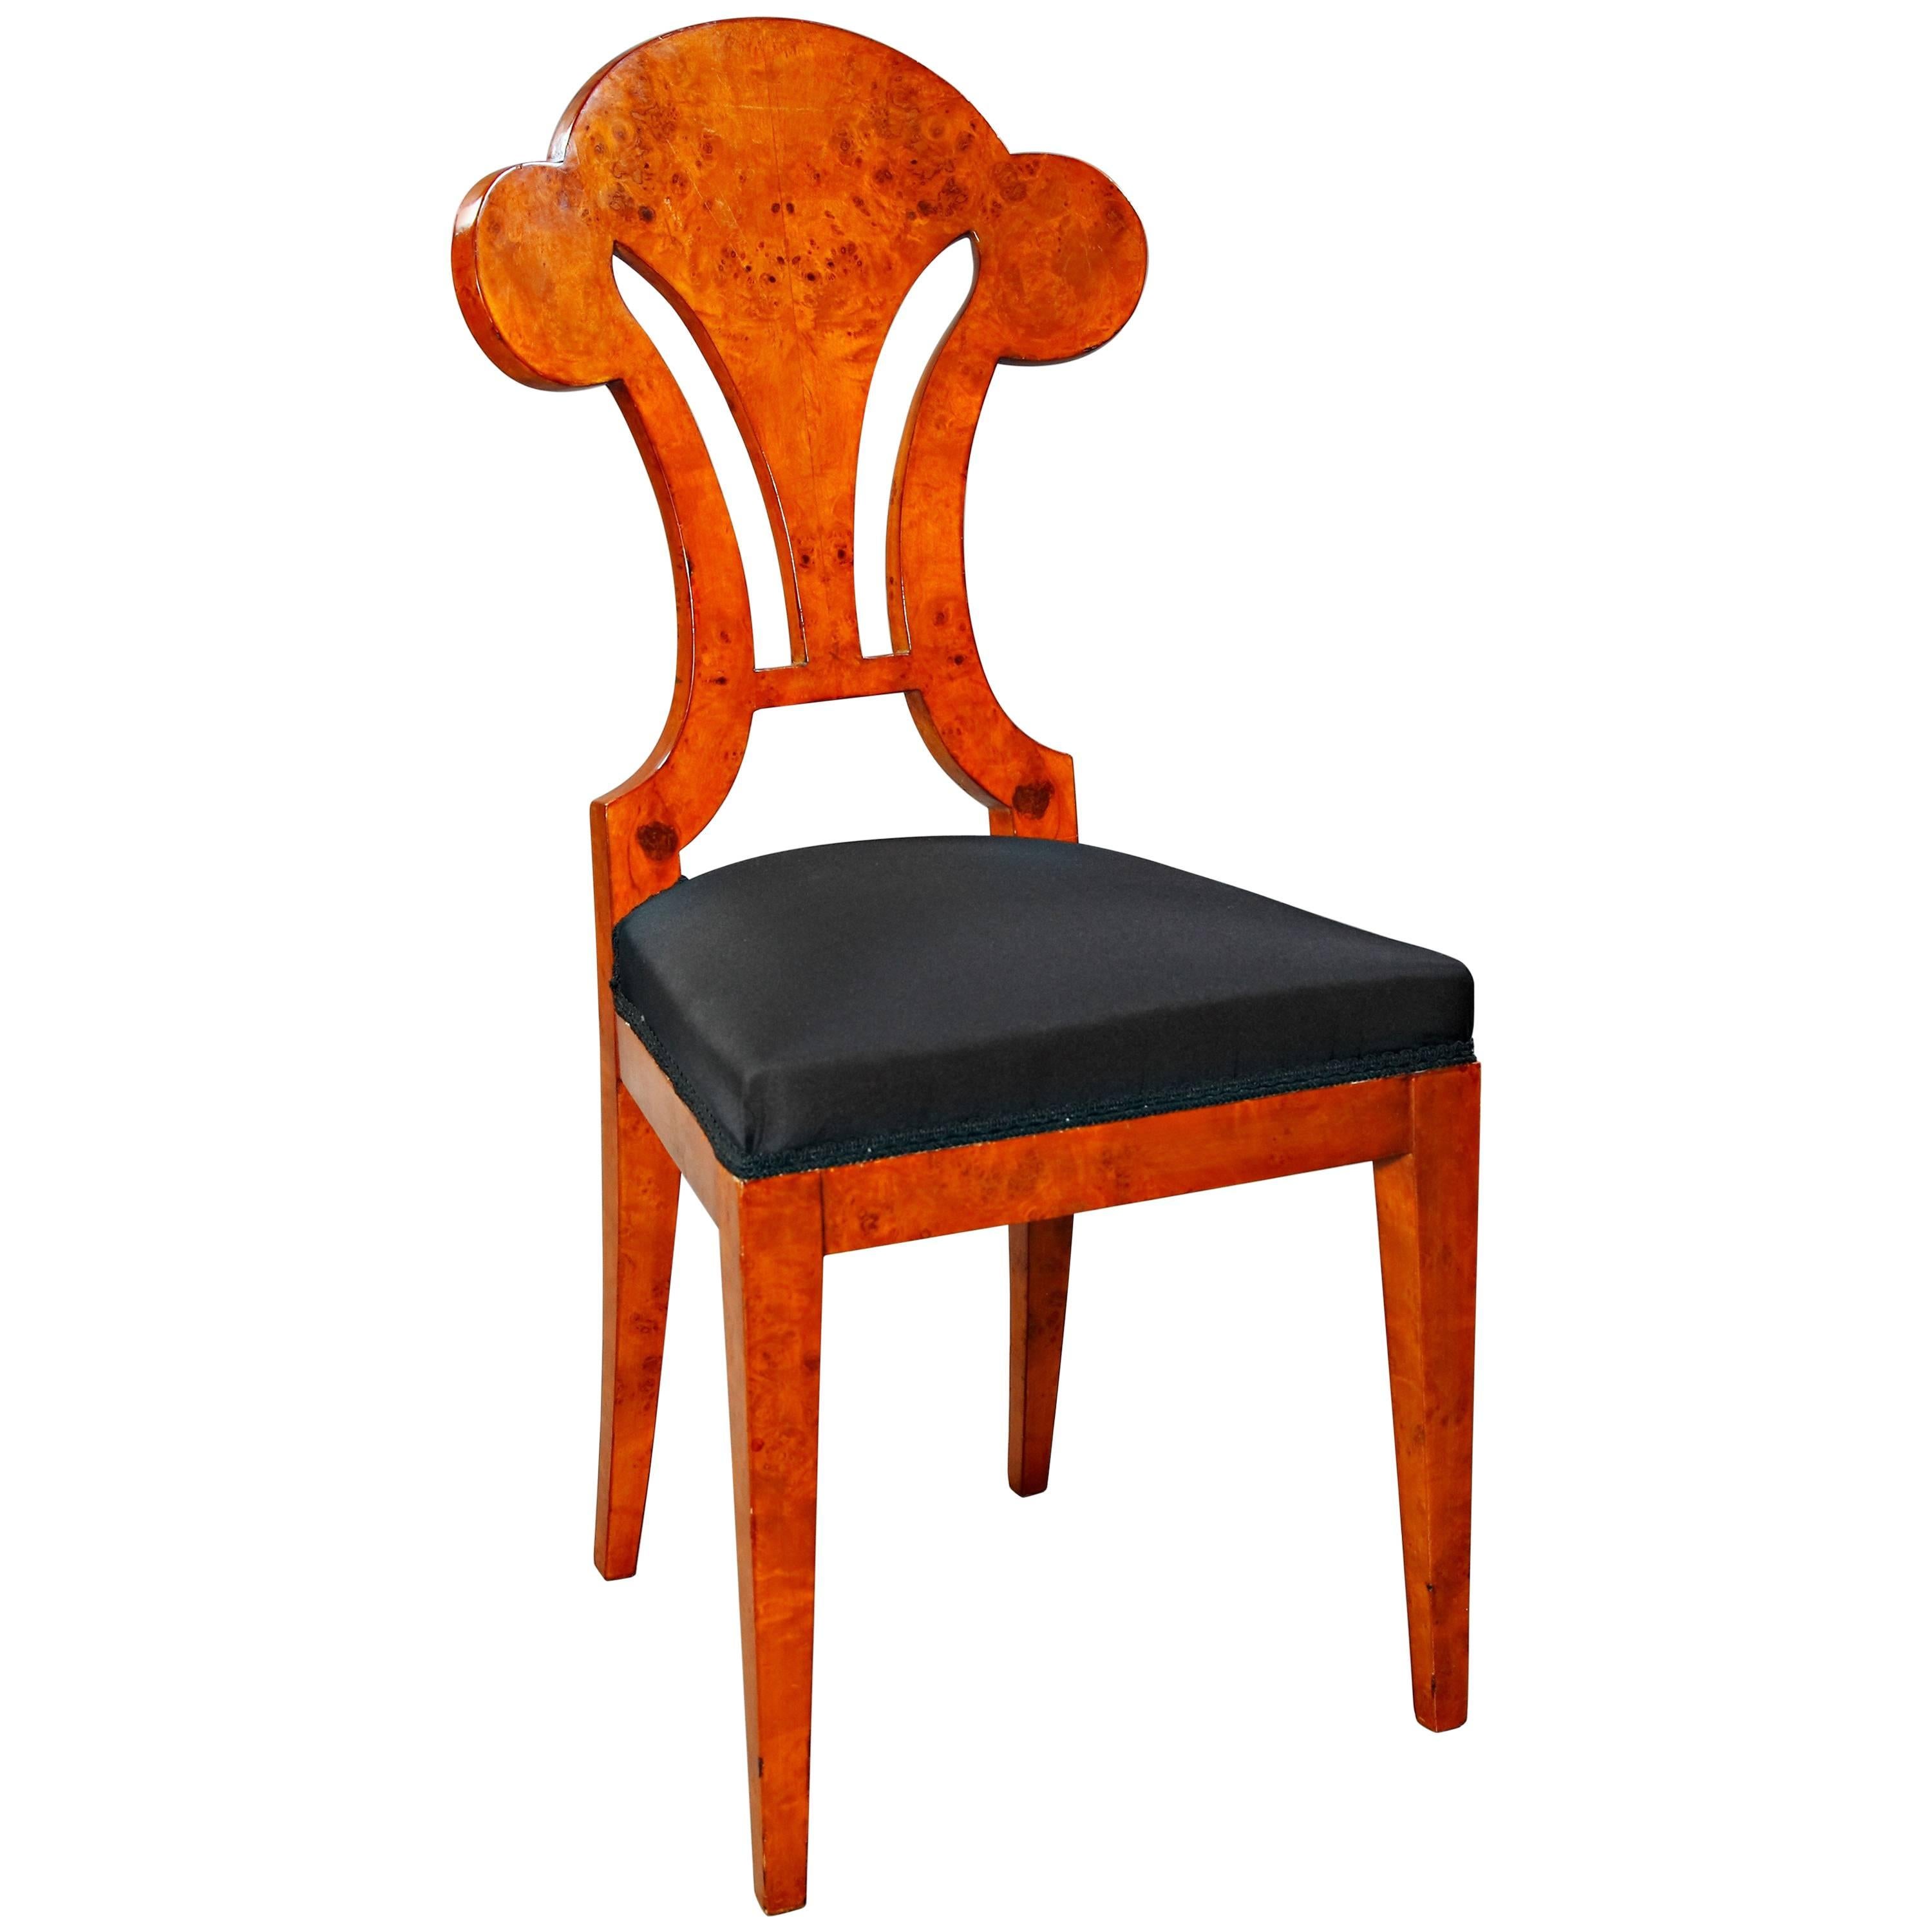 20th Century High Quality Viennese Chair in Biedermeier Style Maple Root Veneer